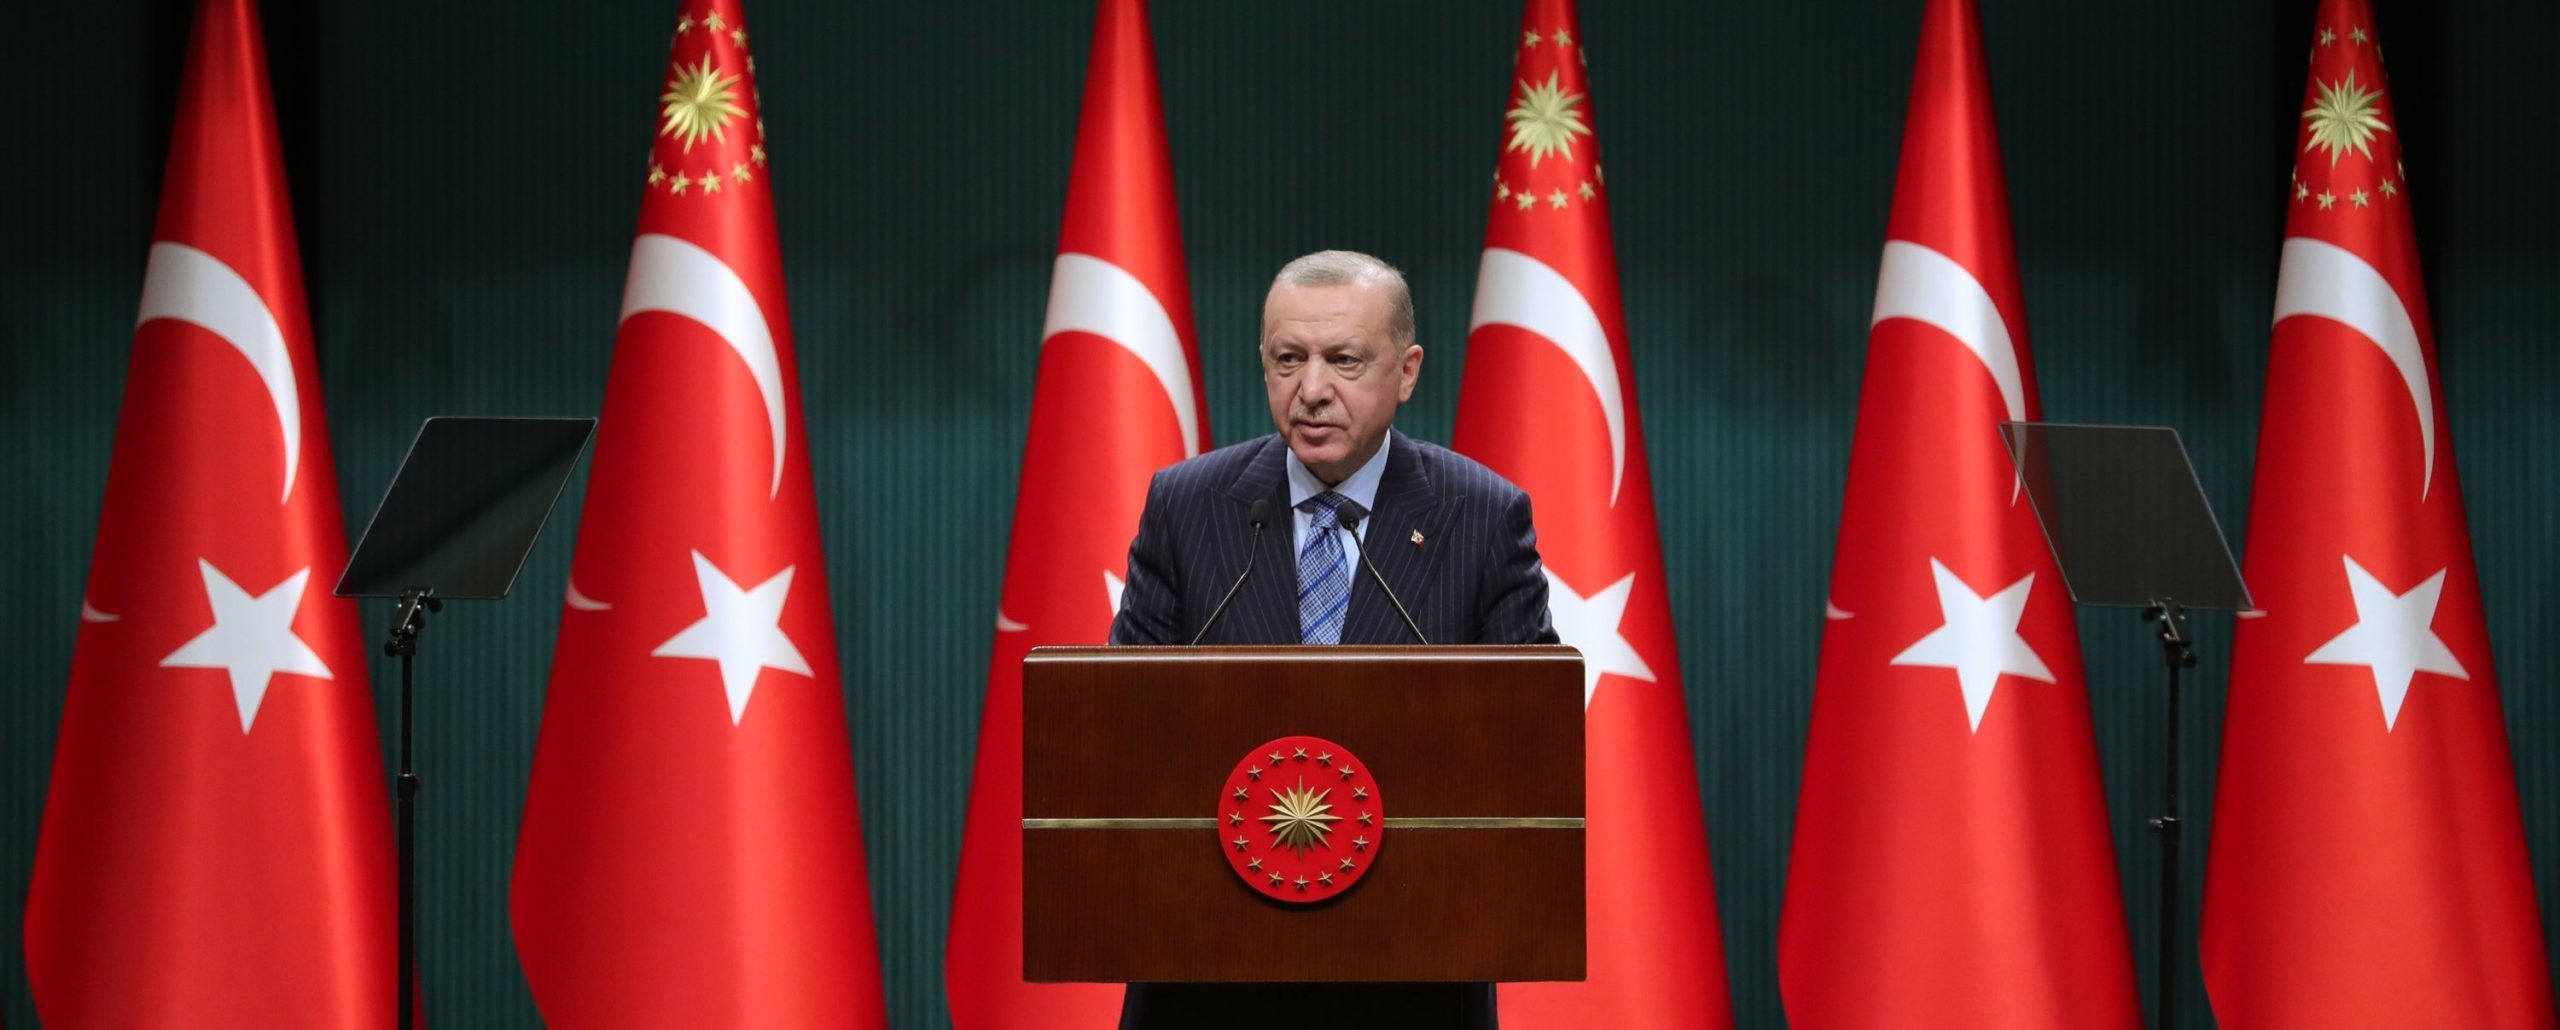 Ανάλυση του Guardian για τις τουρκικές εκλογές: «Έρχεται το τέλος του Ρετζέπ Ταγίπ Ερντογάν;»